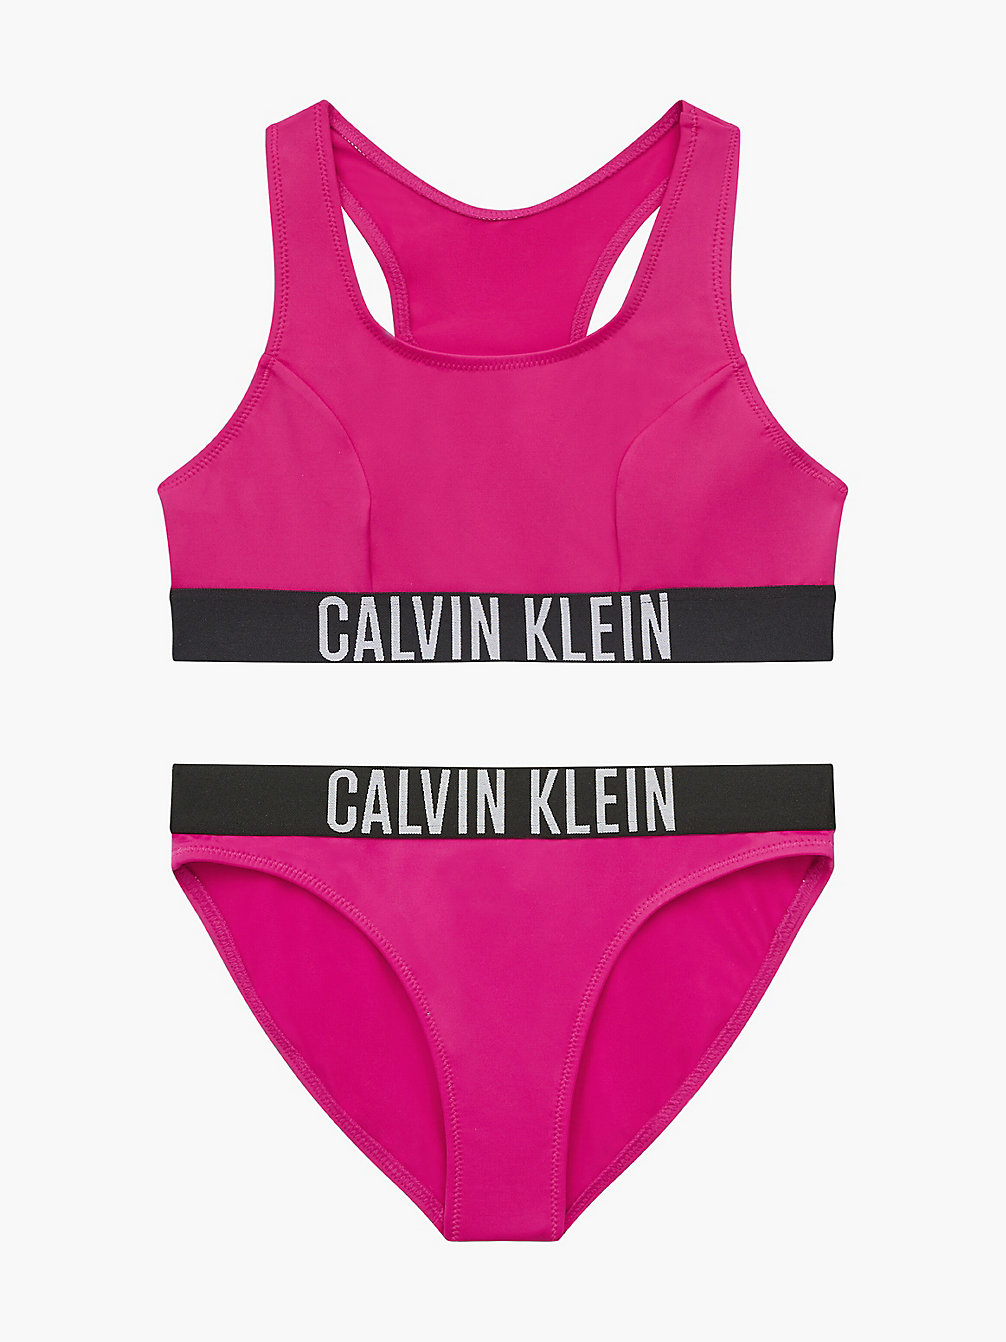 ROYAL PINK Bikini-Set Mit Bralette Für Mädchen - Intense Power undefined Maedchen Calvin Klein